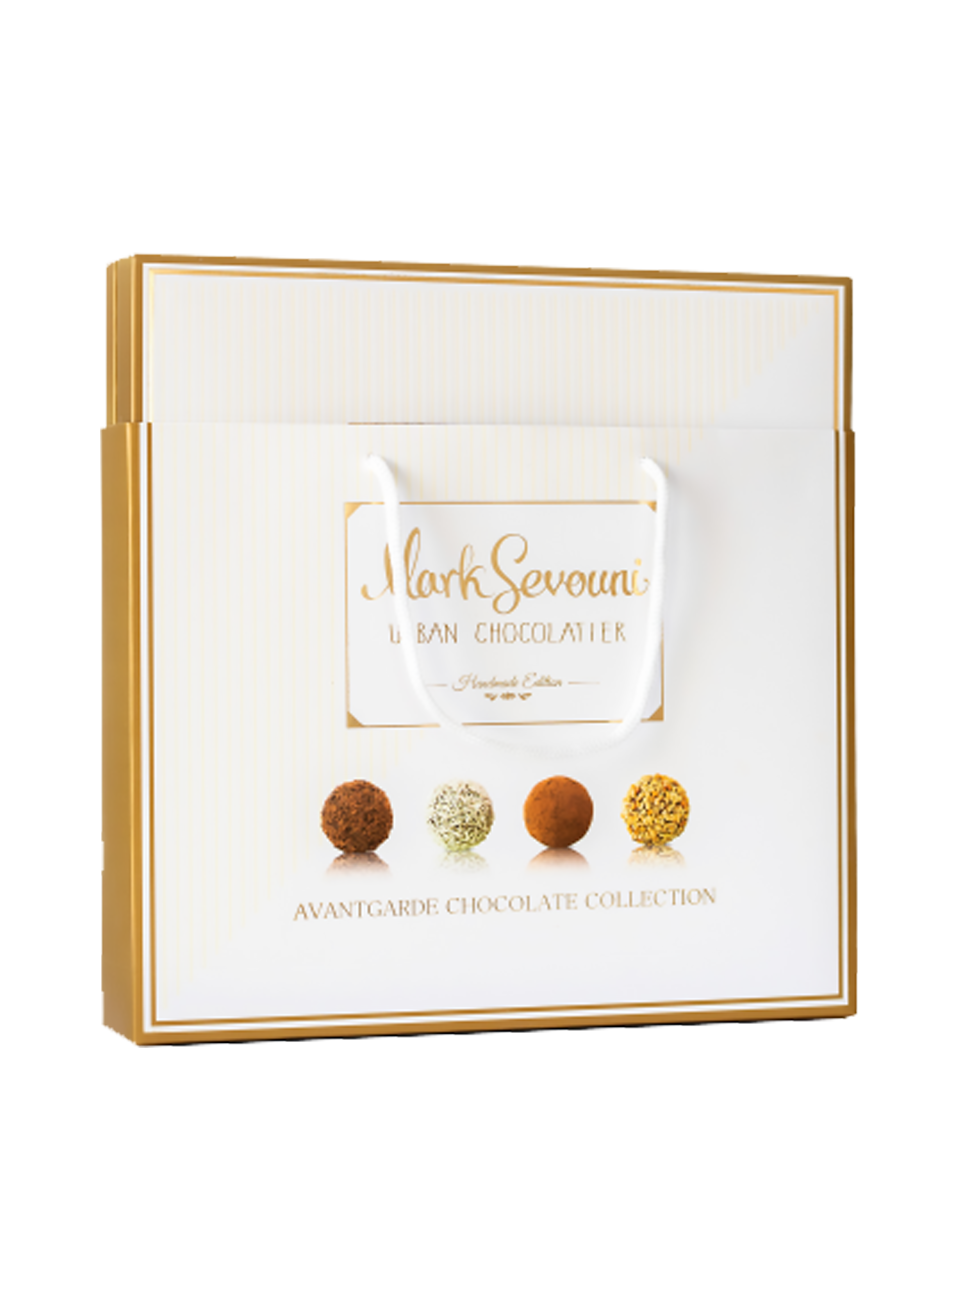 Мark Sevouni avantgarde коллекция шоколадных конфет 280 гр.